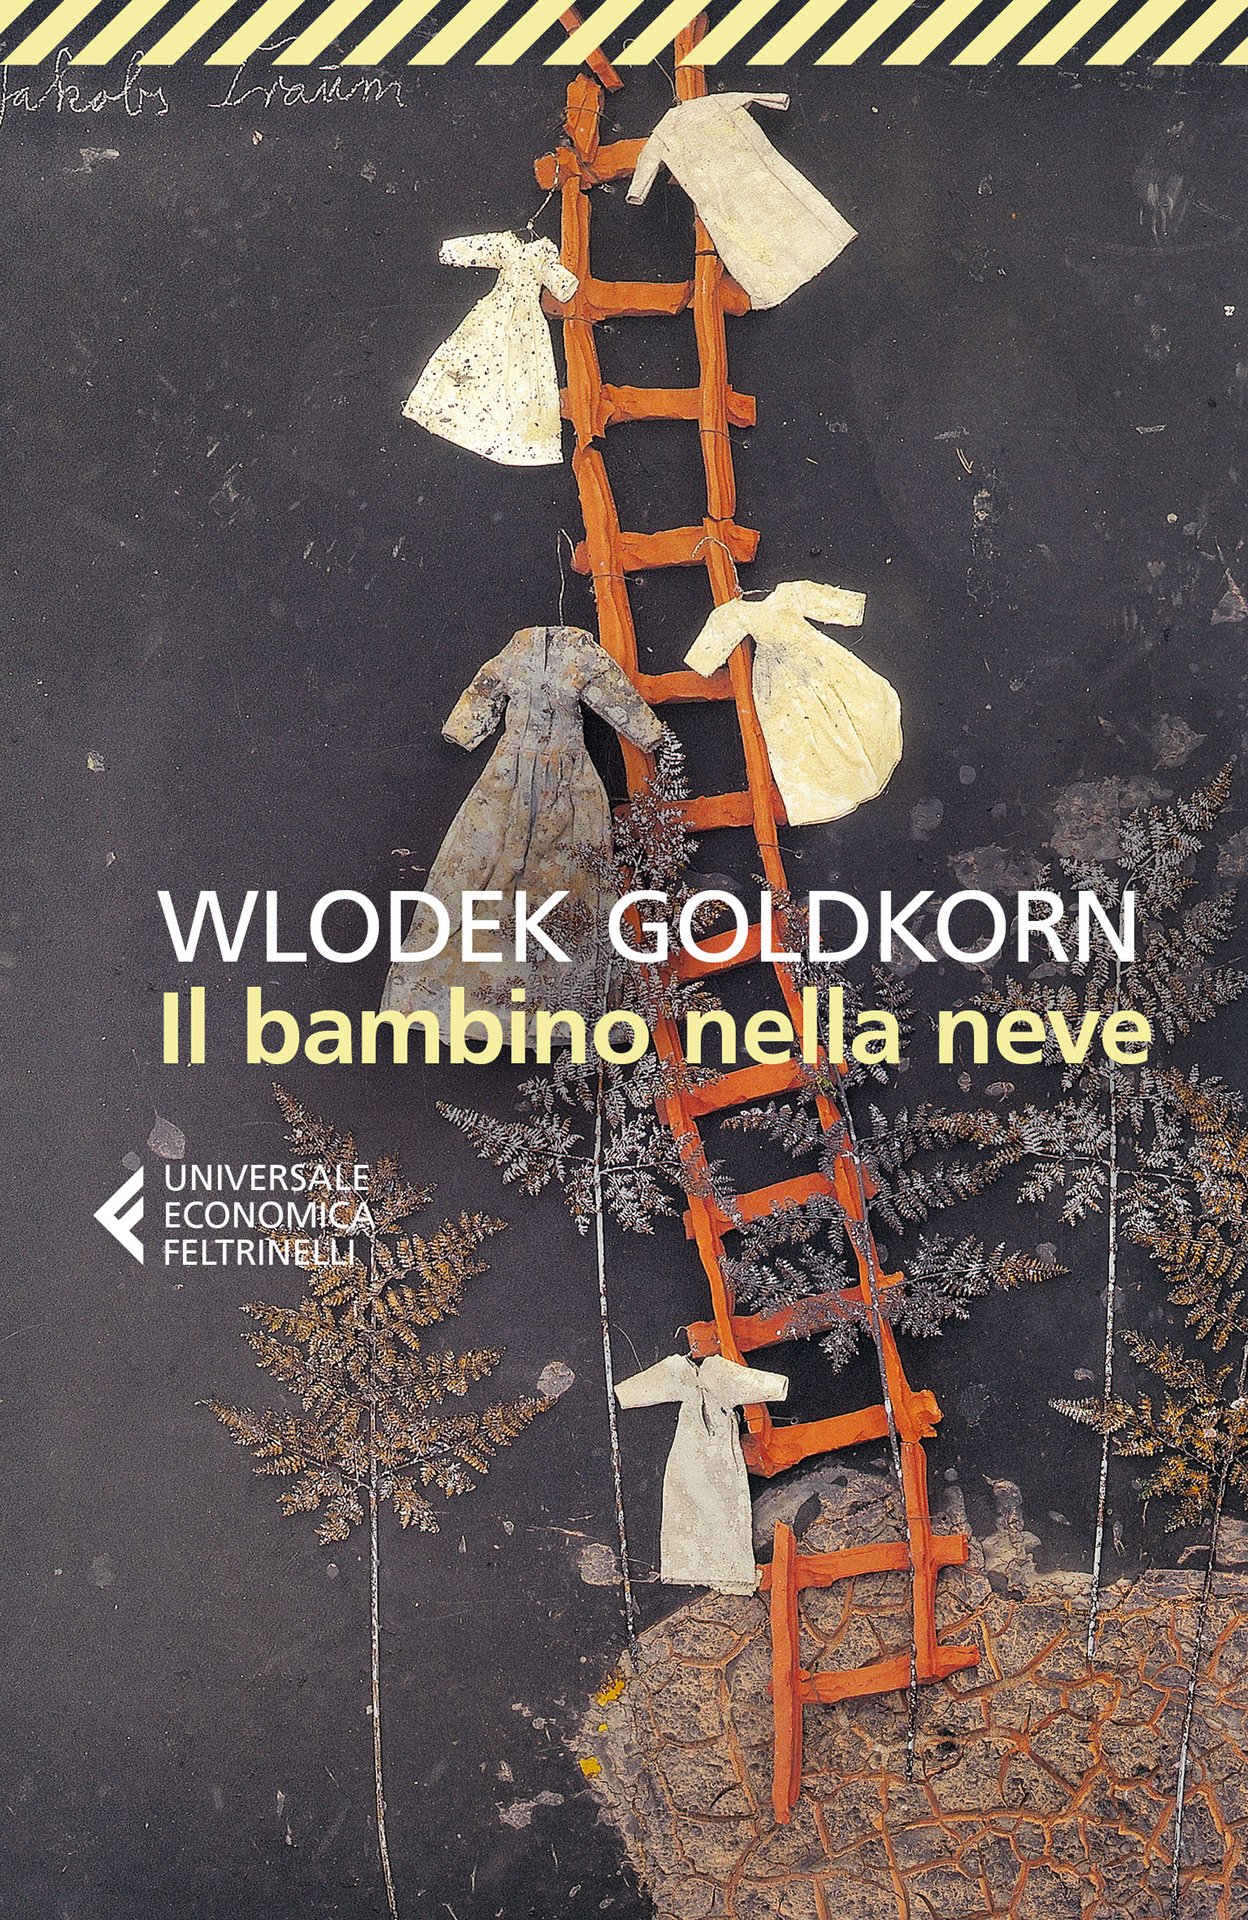 Wlodek Goldkorn per le scuole: Il bambino nella neve